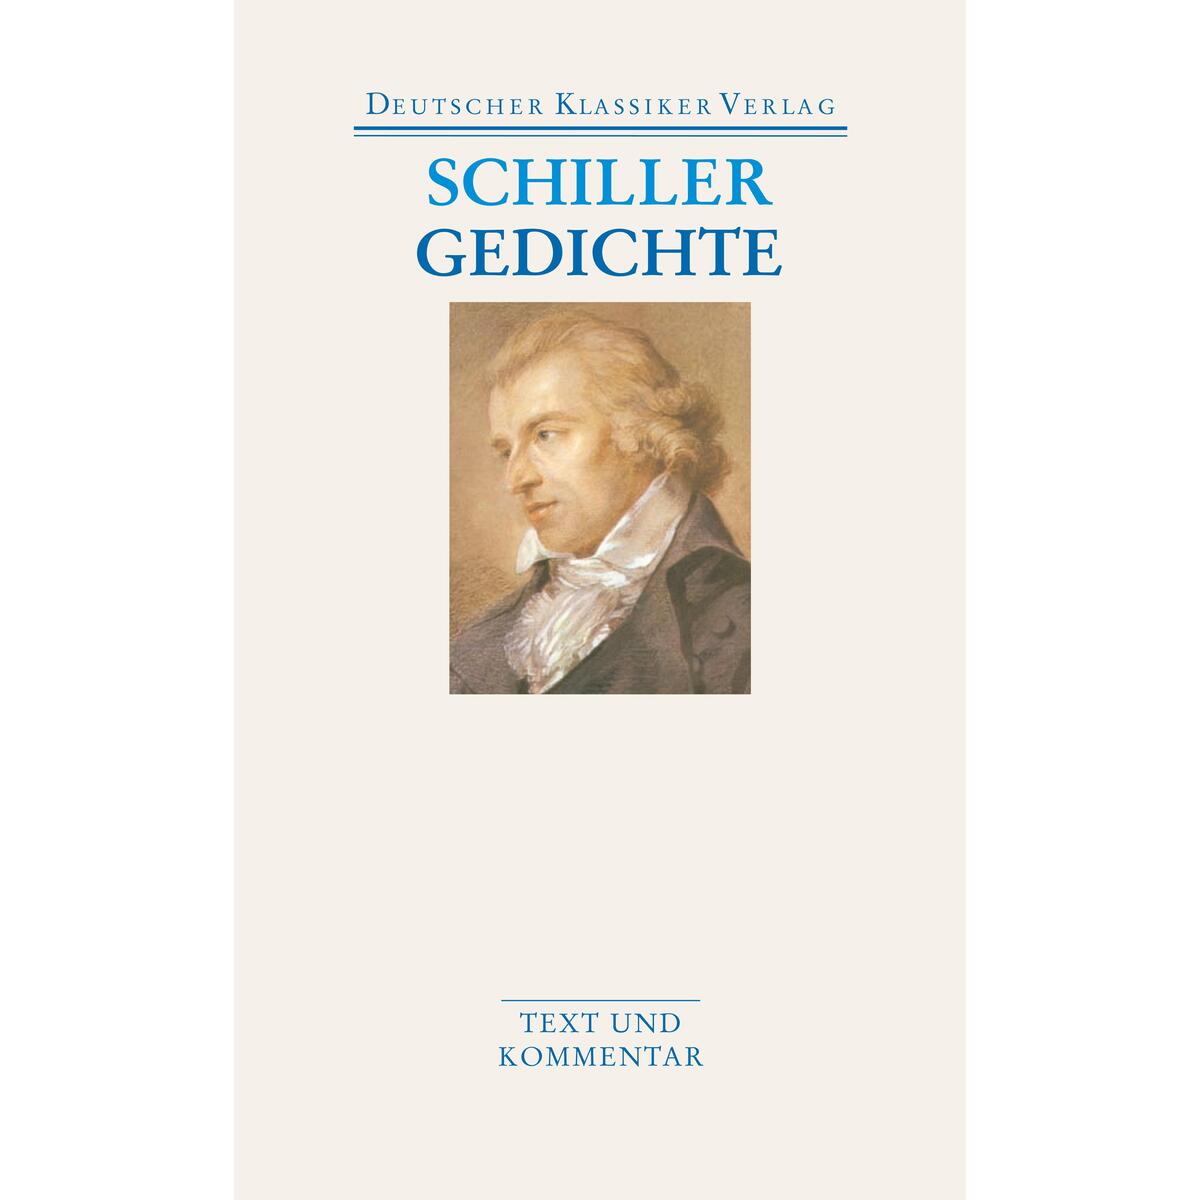 Gedichte von Deutscher Klassikerverlag